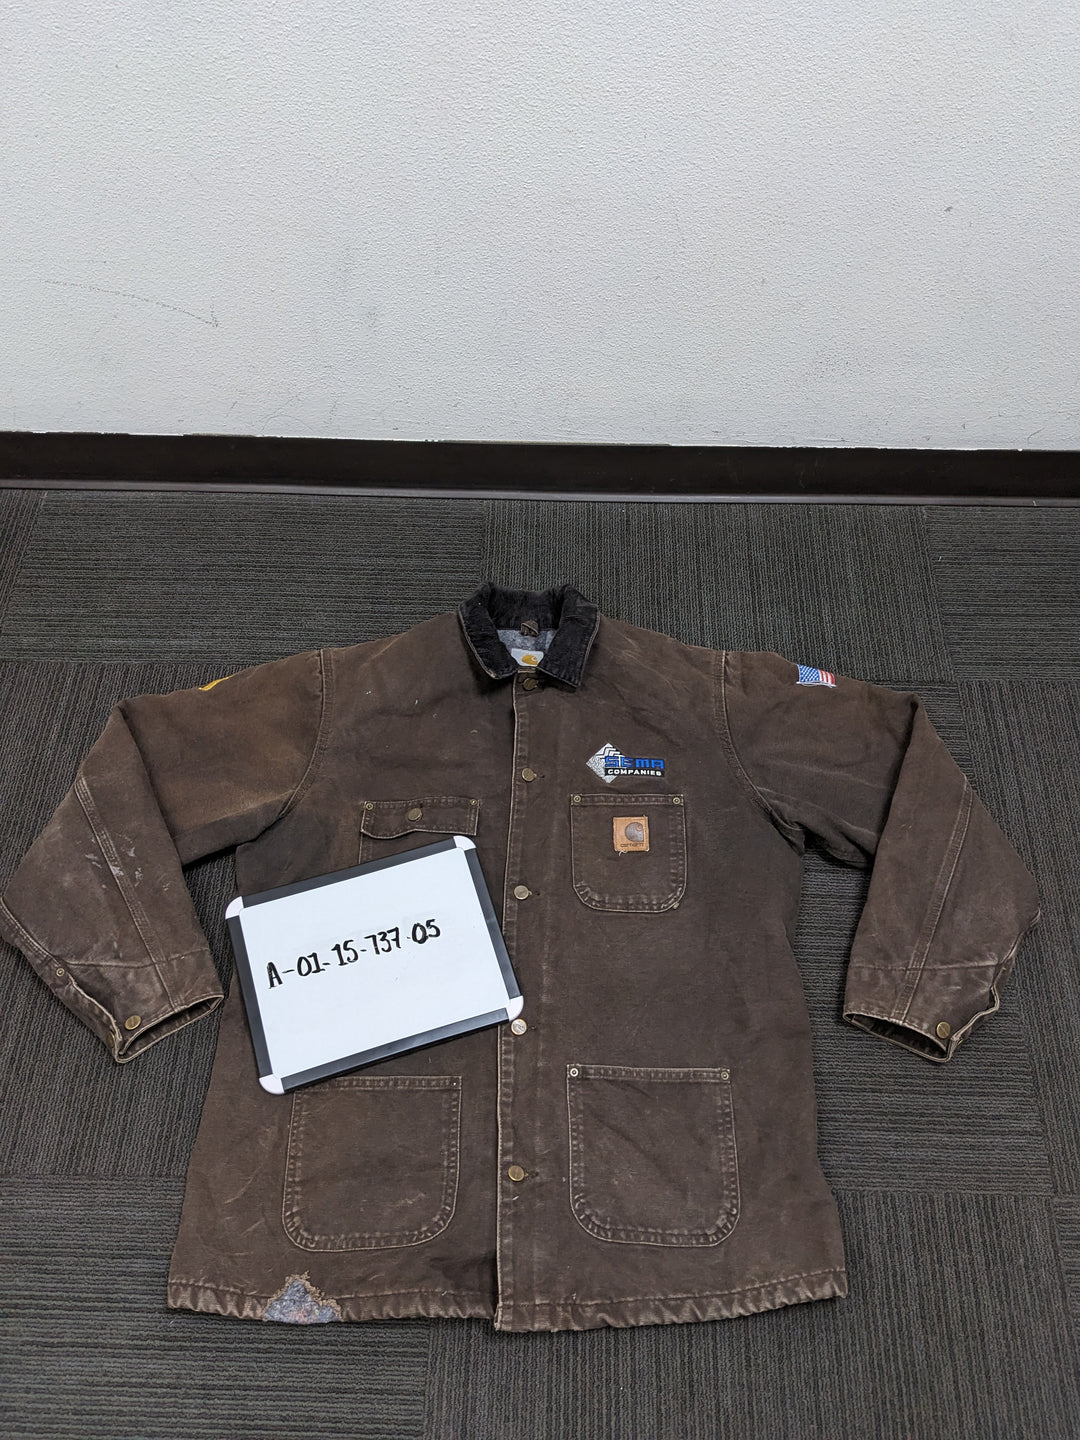 xCarhartt Jacket 1 pc 4 lbs A0115737-05 - Raghouse